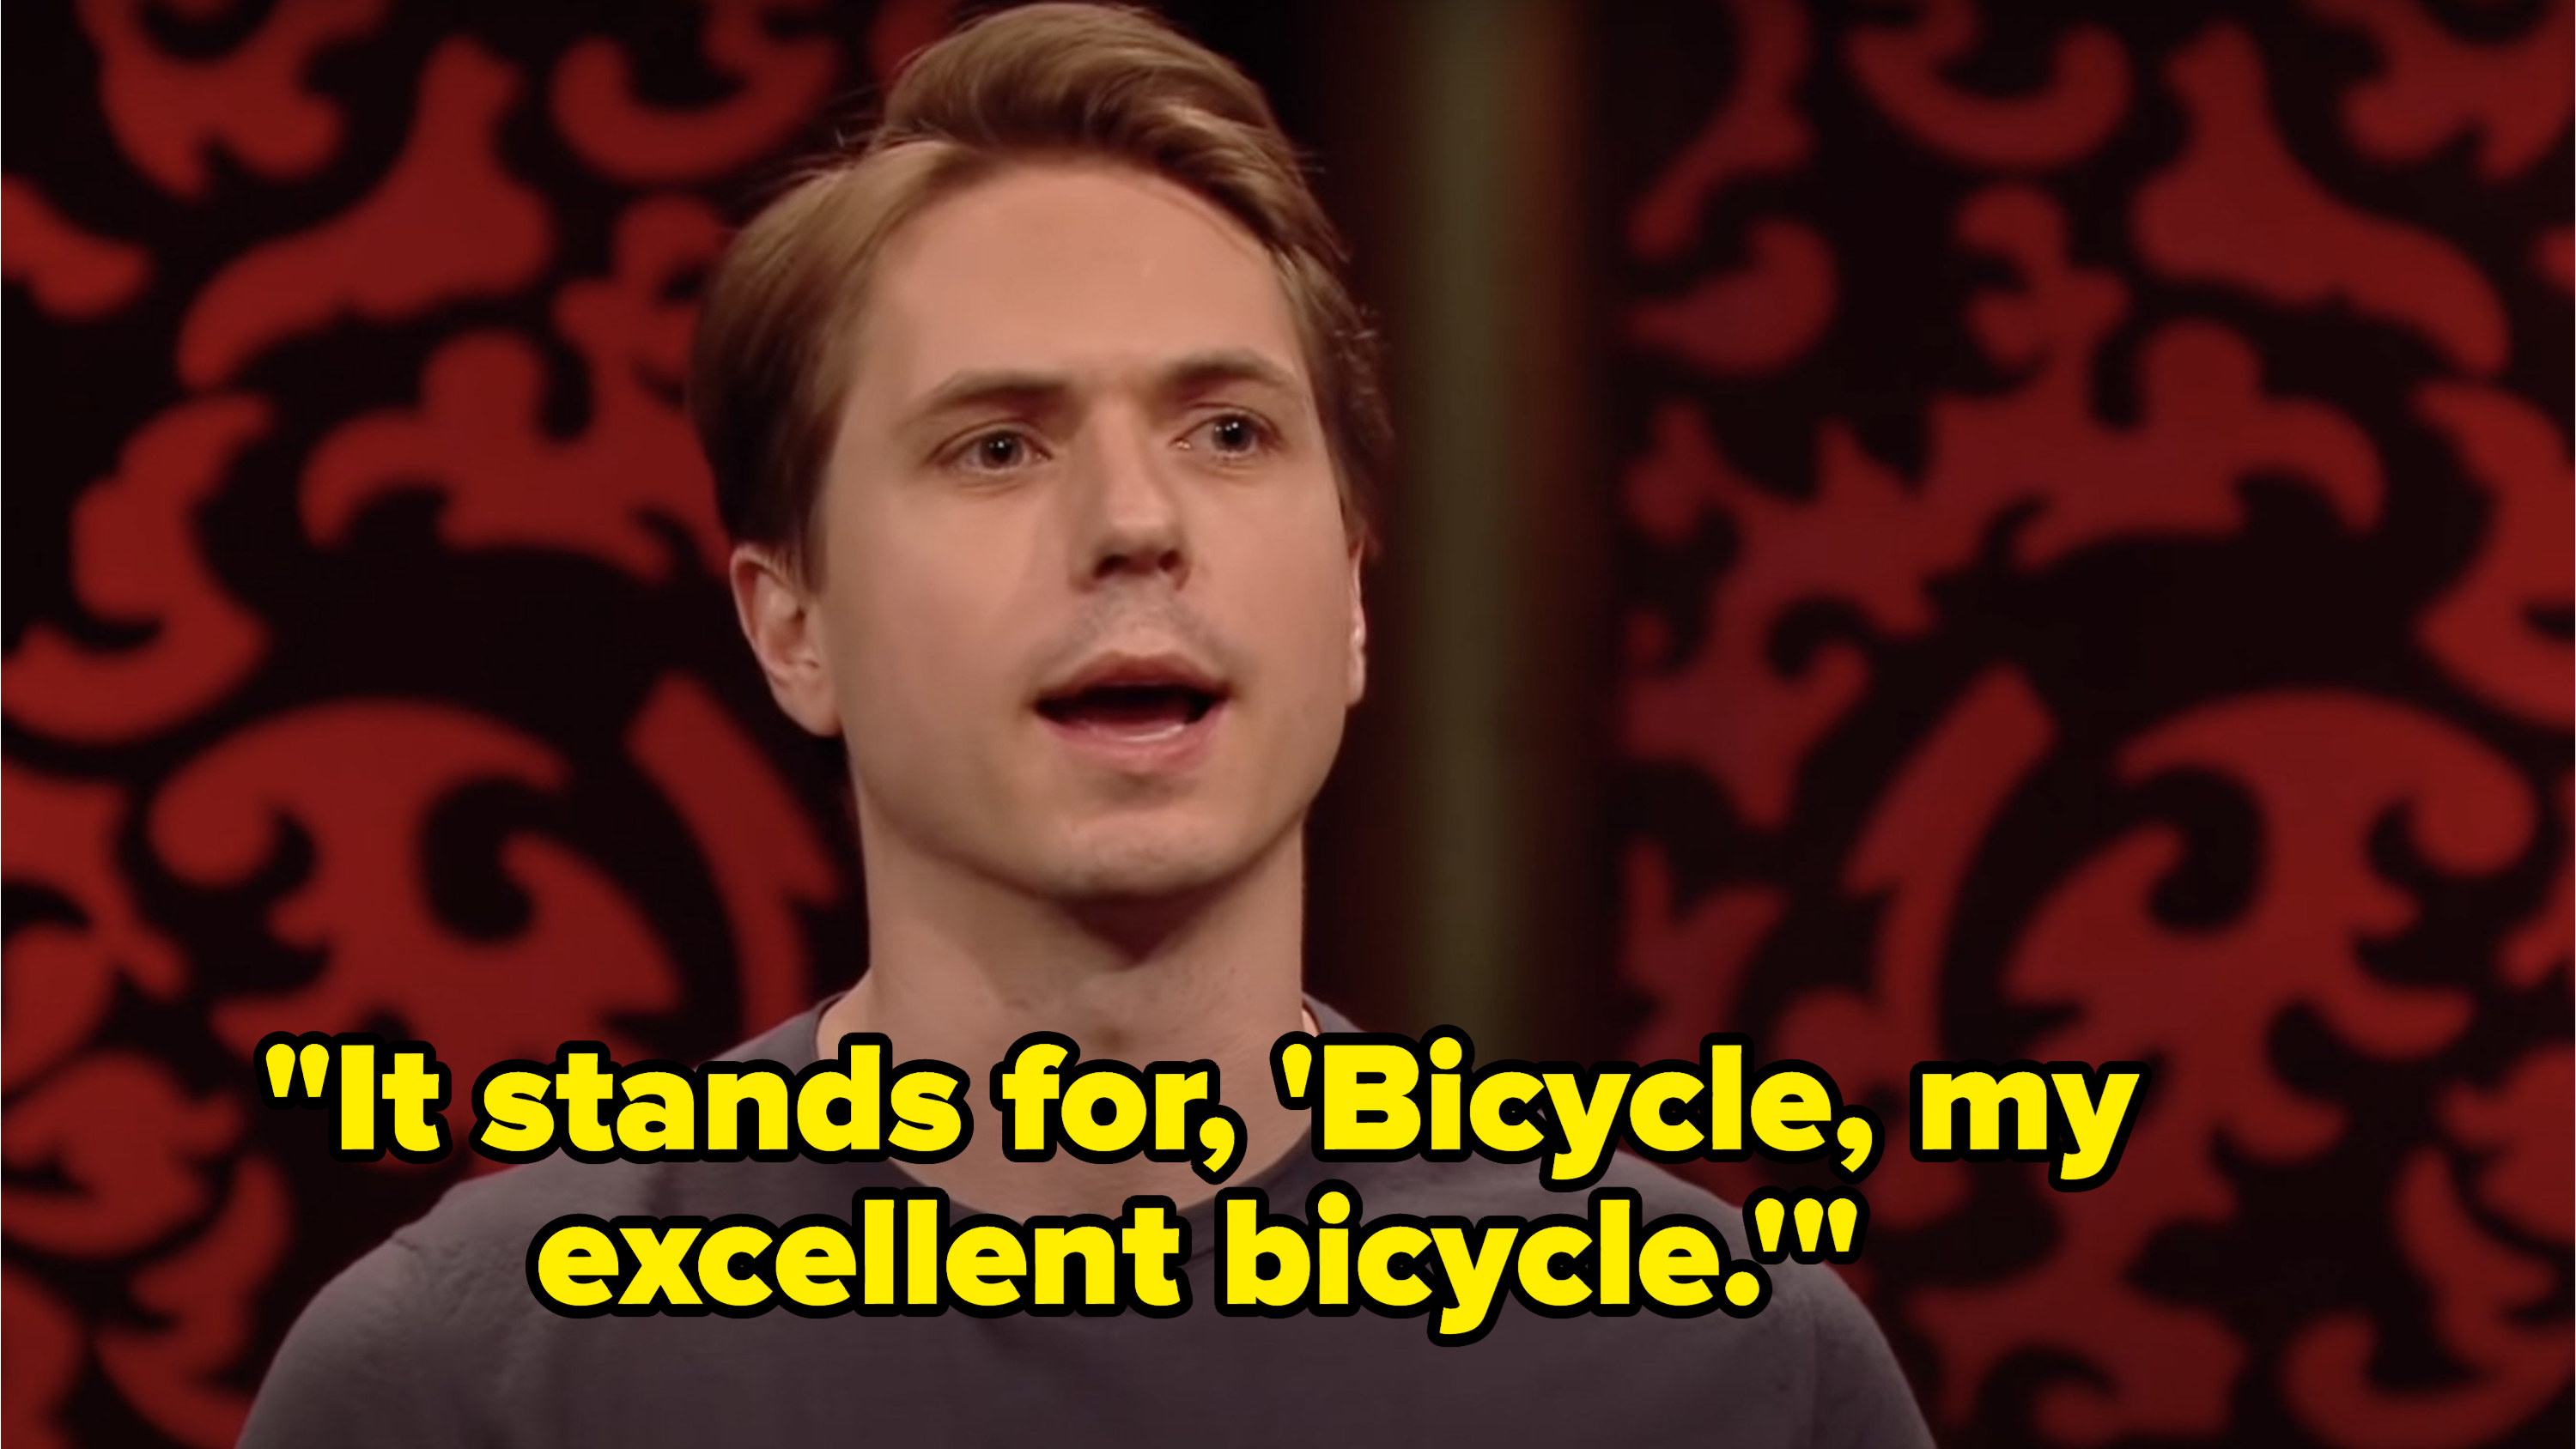 乔·托马斯说,它代表,自行车,我优秀的自行车